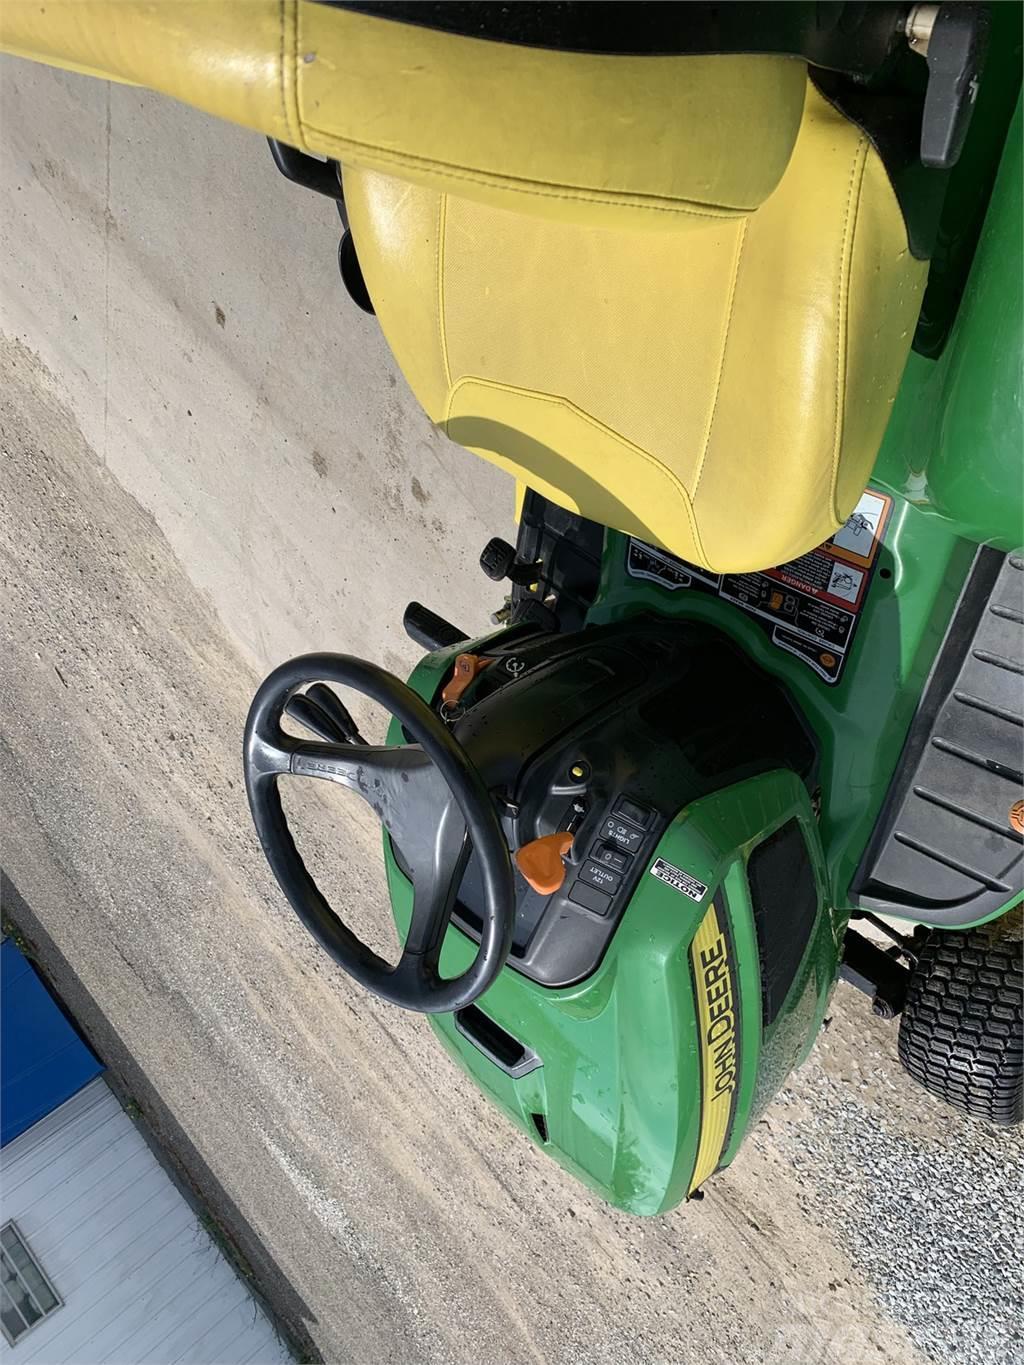 John Deere X750 Naudoti kompaktiški traktoriai